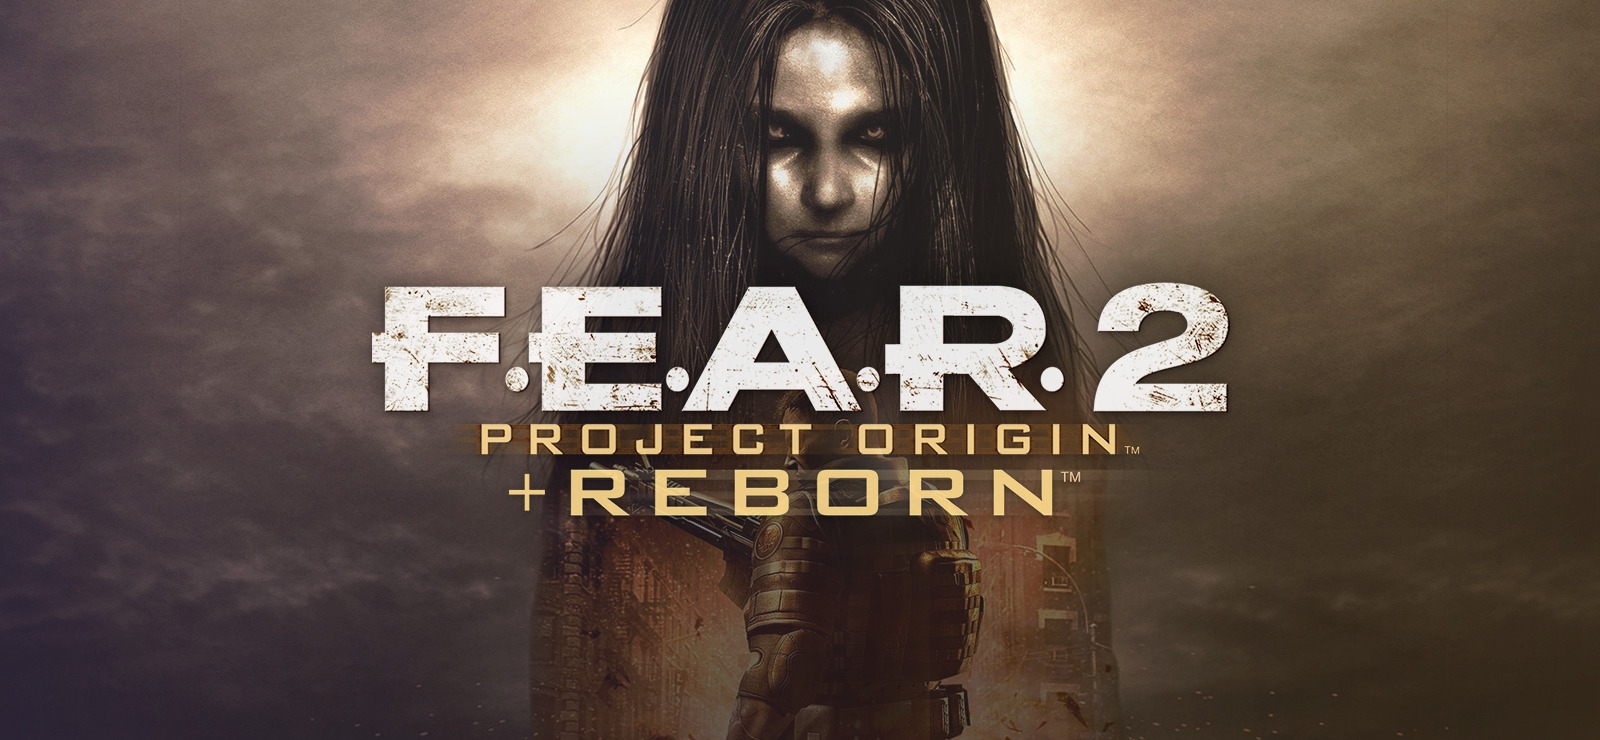 F.E.A.R. 2: Project Origin PC Version Game Free Download